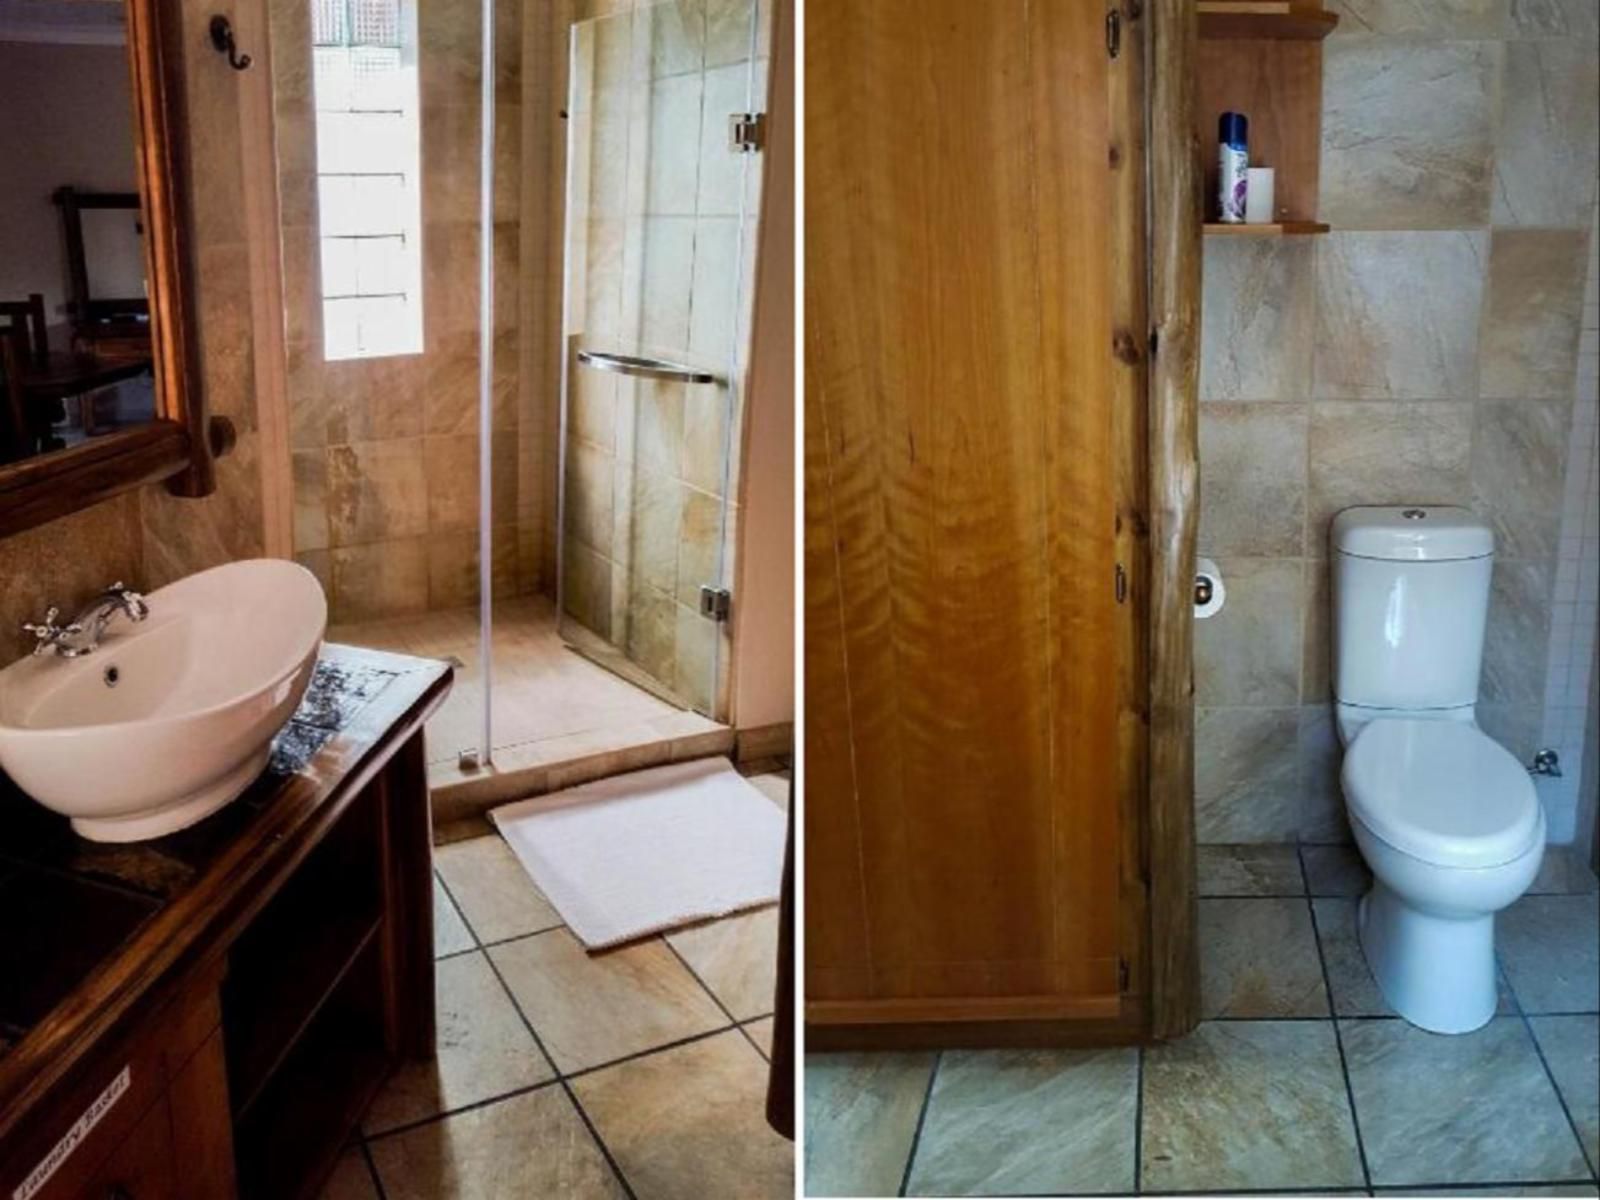 Aark Guest Lodge Vanderbijlpark Gauteng South Africa Door, Architecture, Bathroom